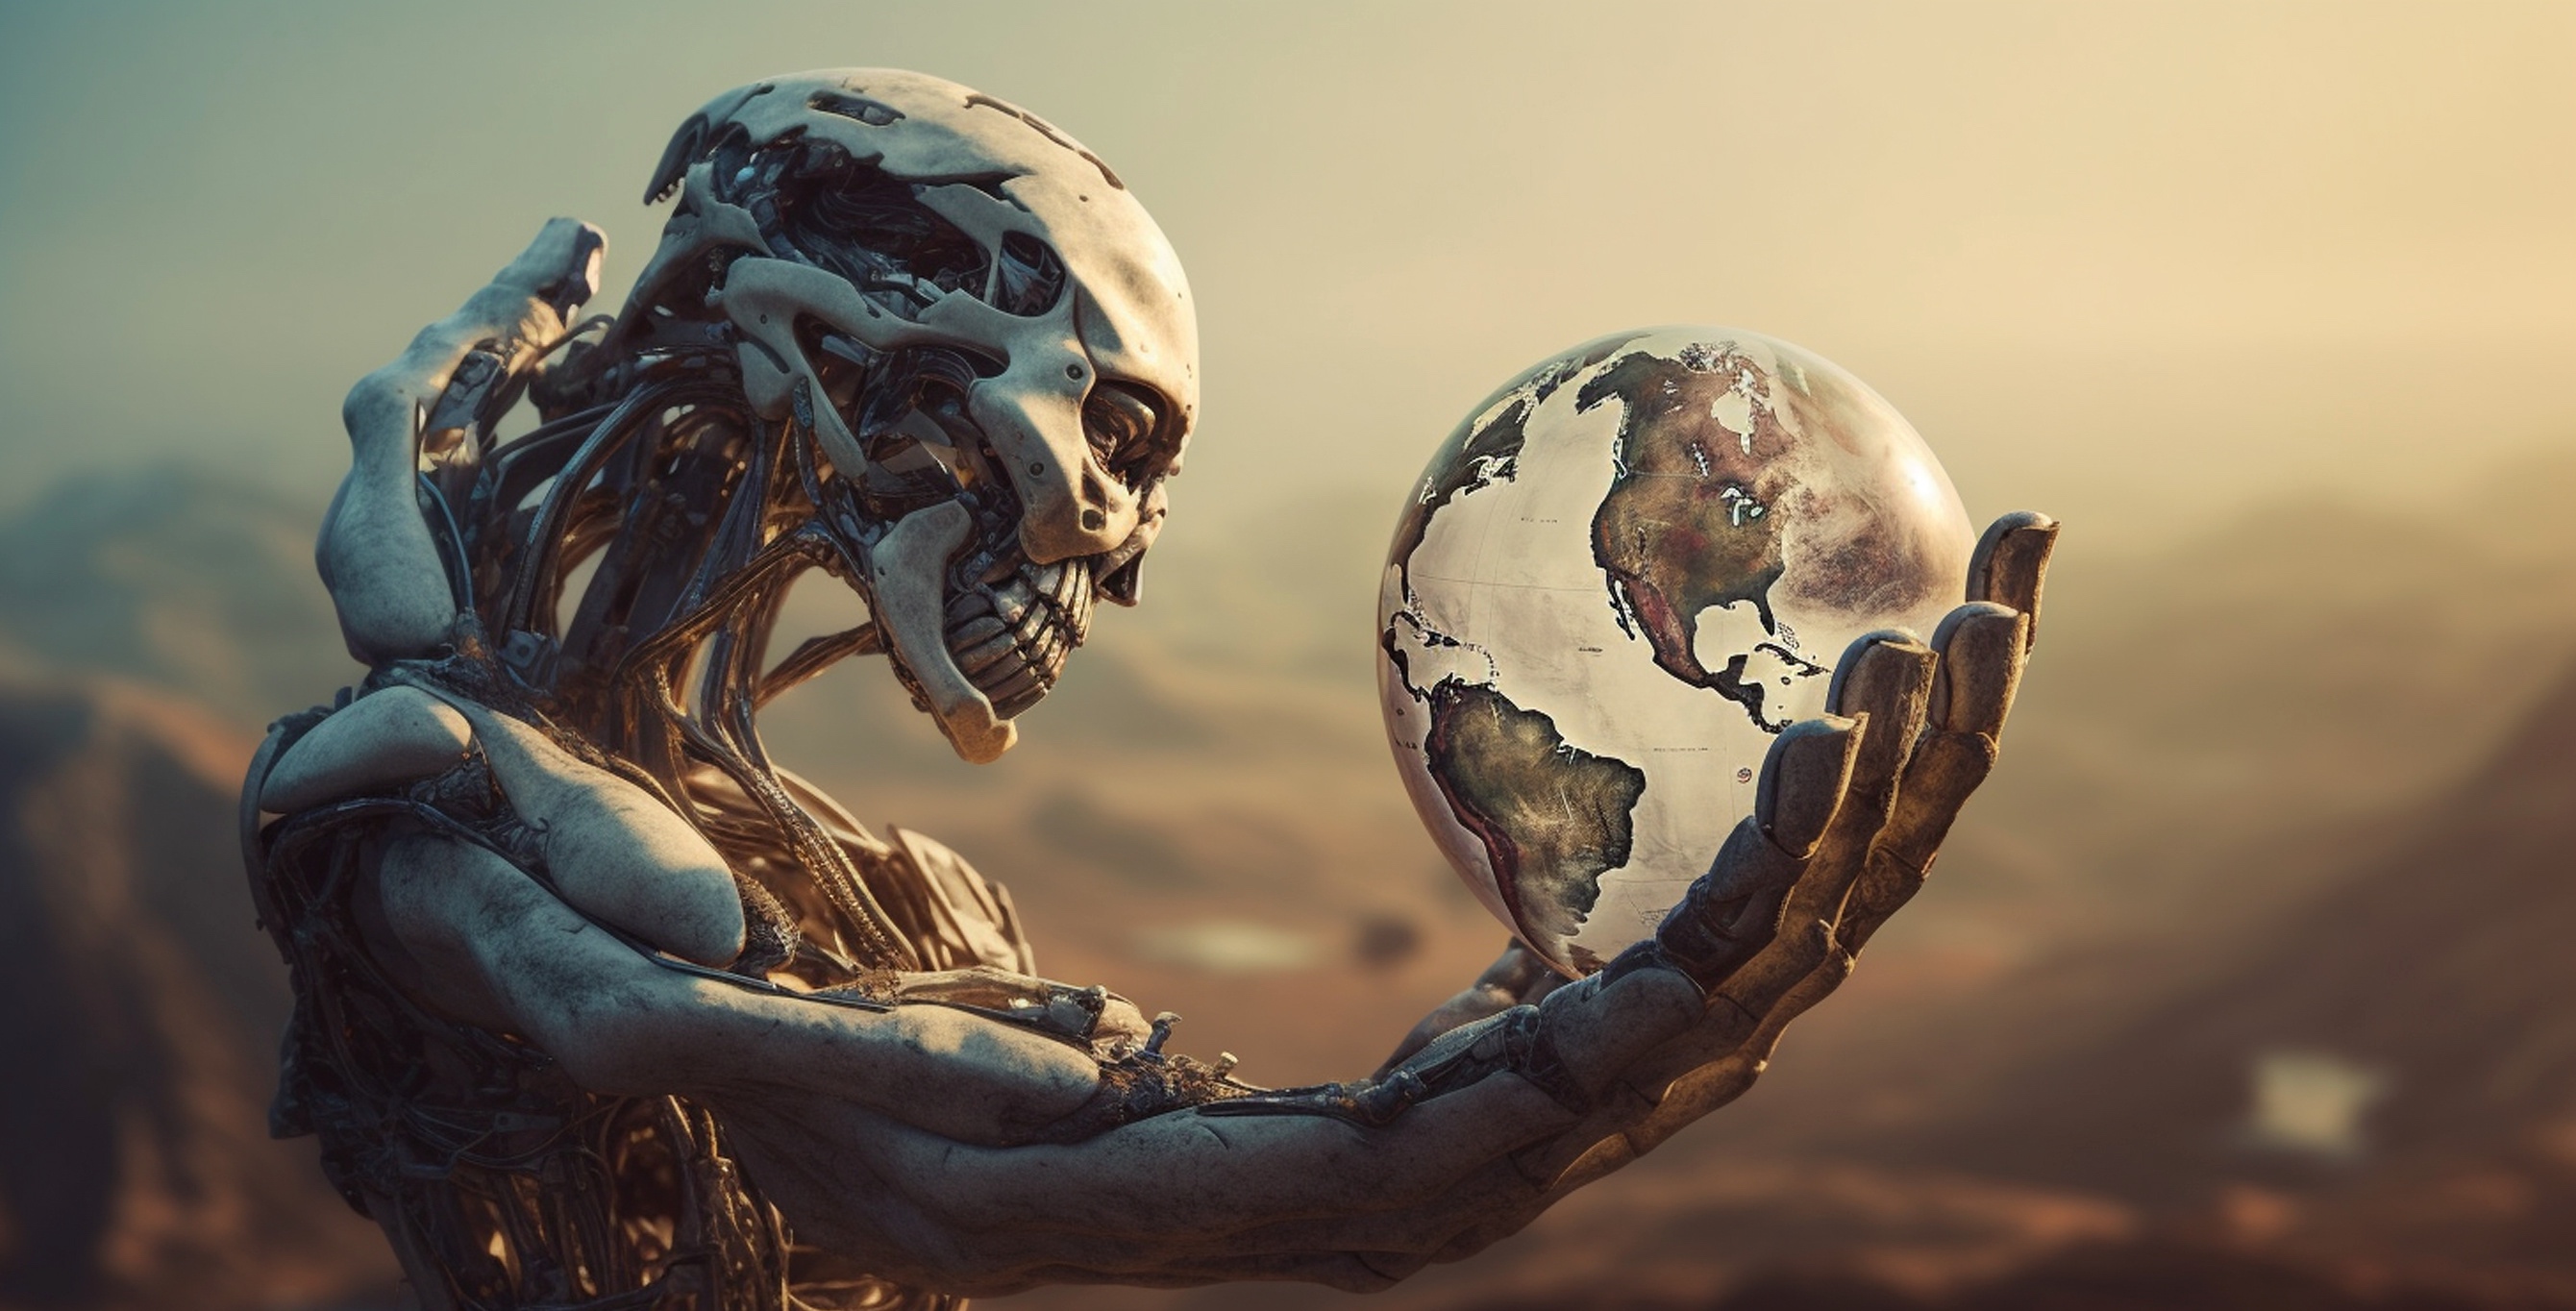 Les intelligences artificielles représentent-elles une menace pour la vie sur Terre ? © wetzkaz, Adobe Stock